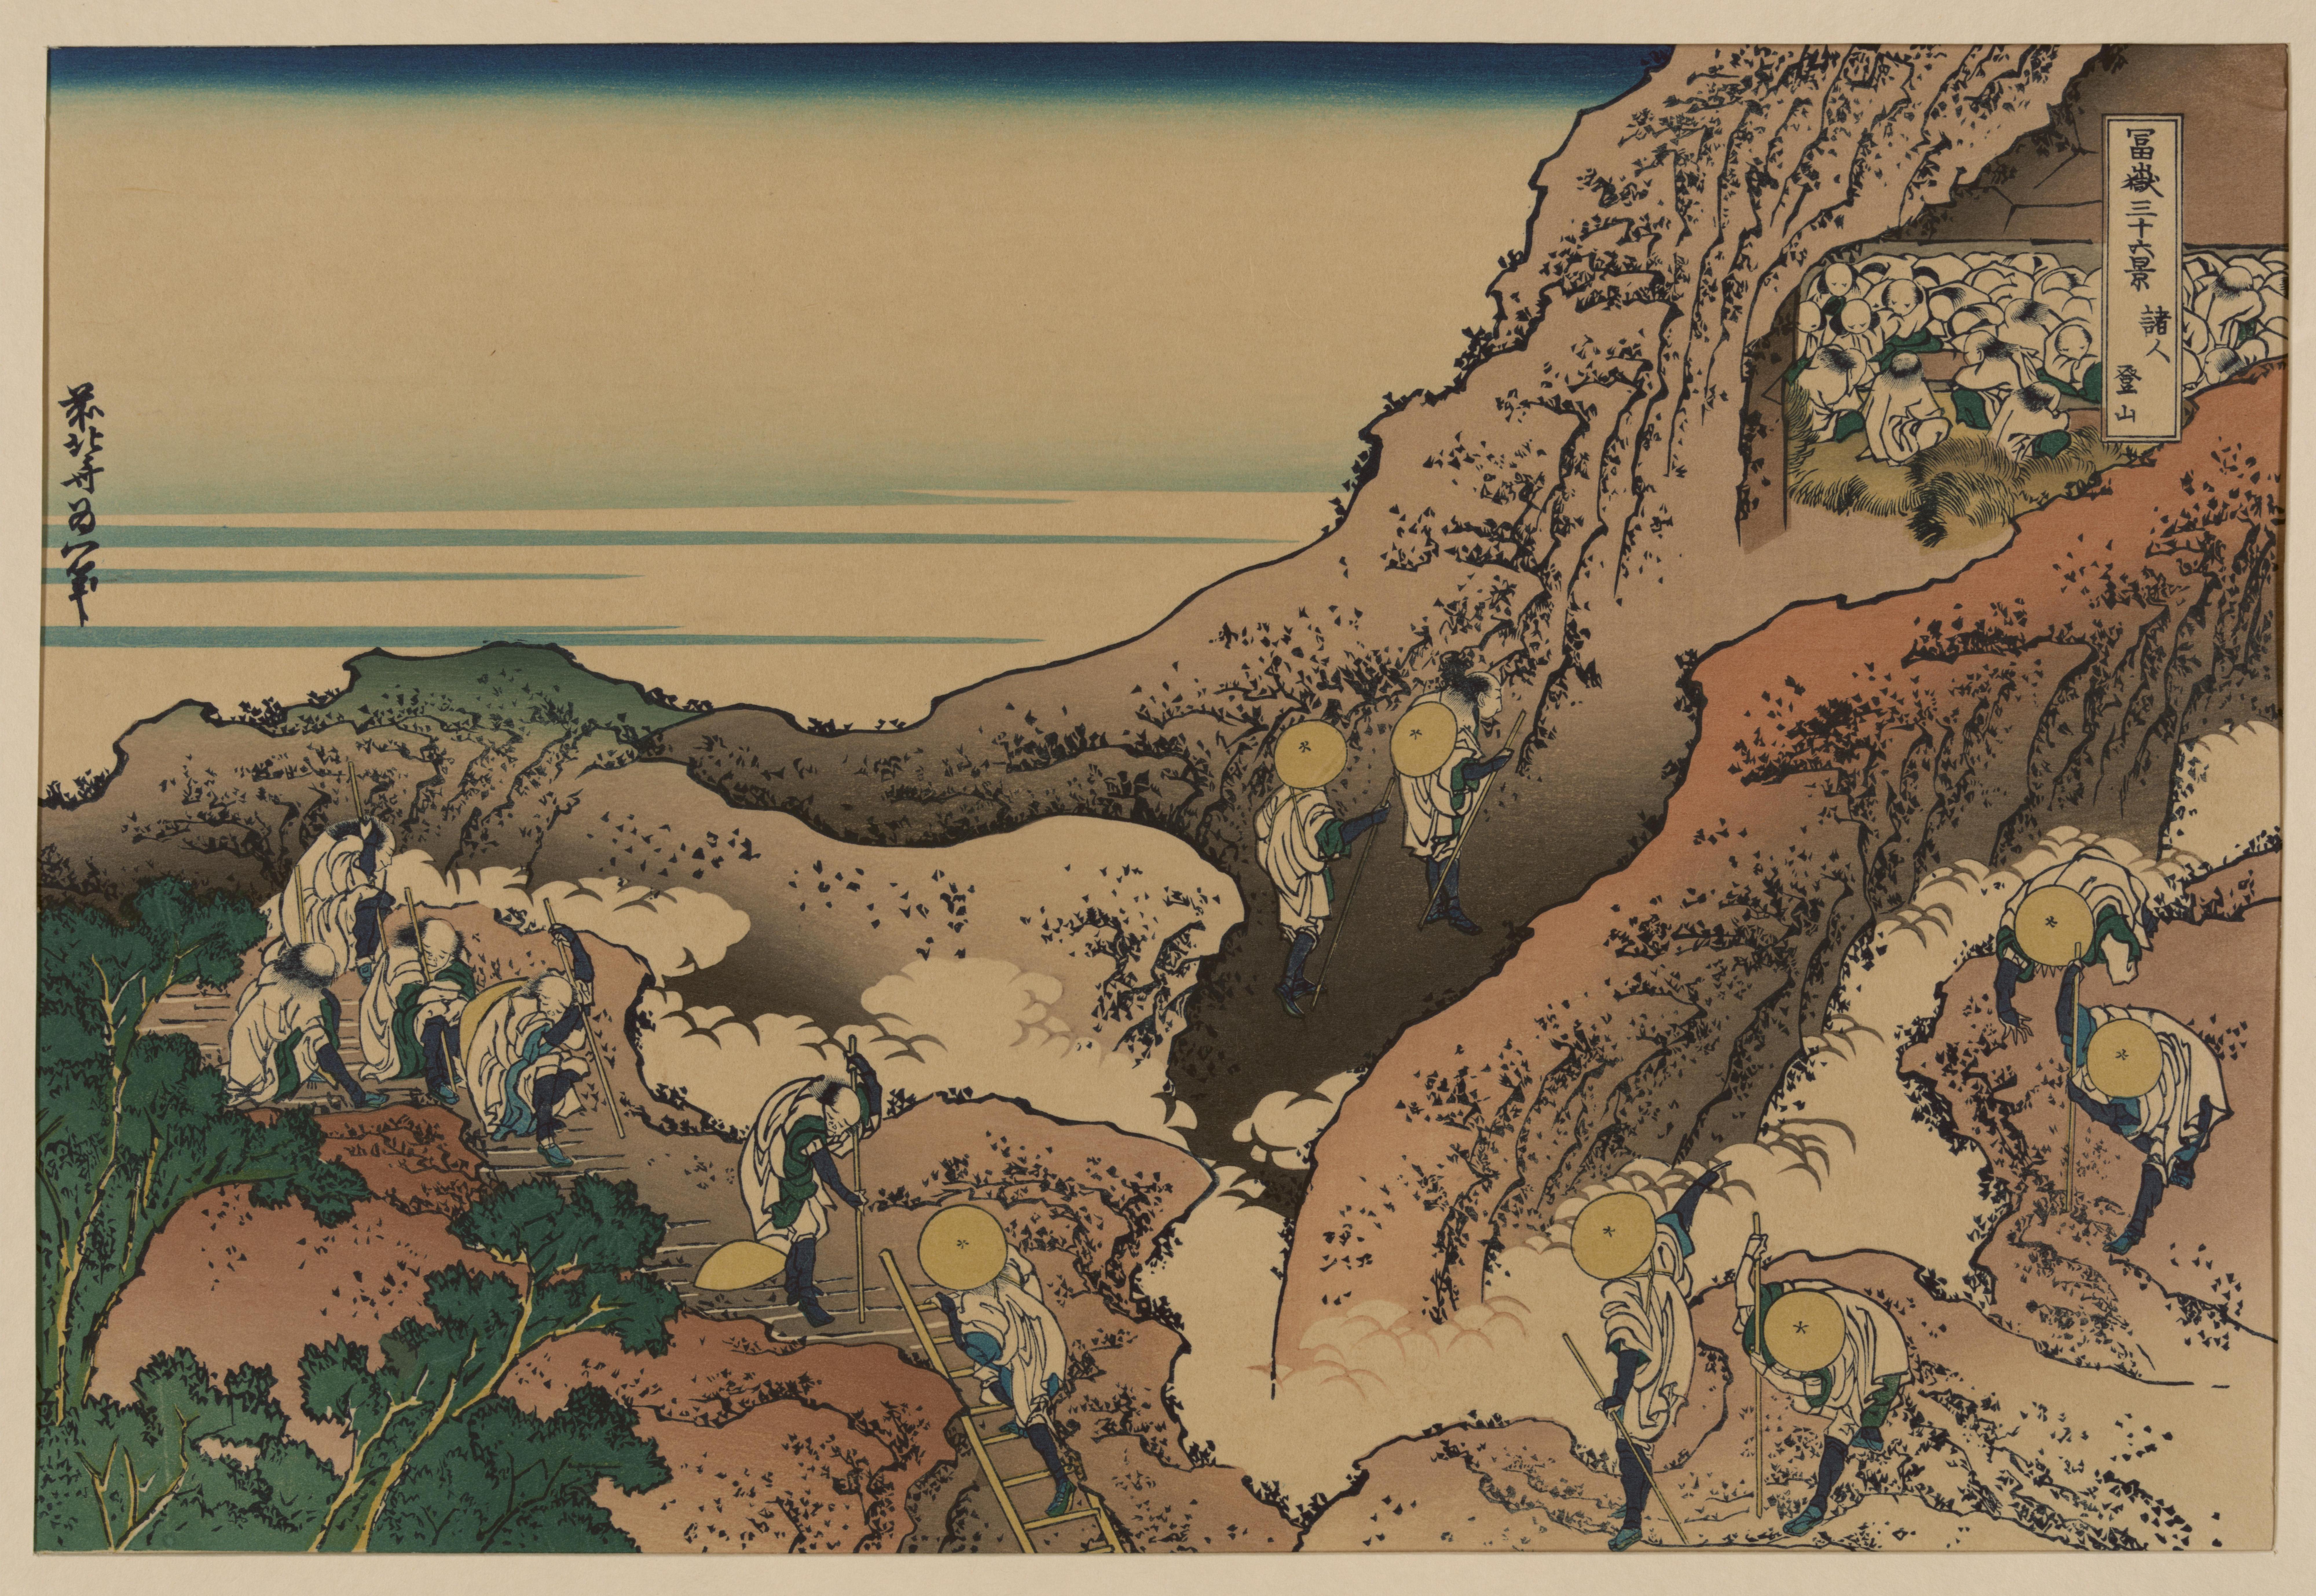 Katsushika Hokusai. Groups of Mountain Climbers, from the series Thirty-six Views of Mount Fuji